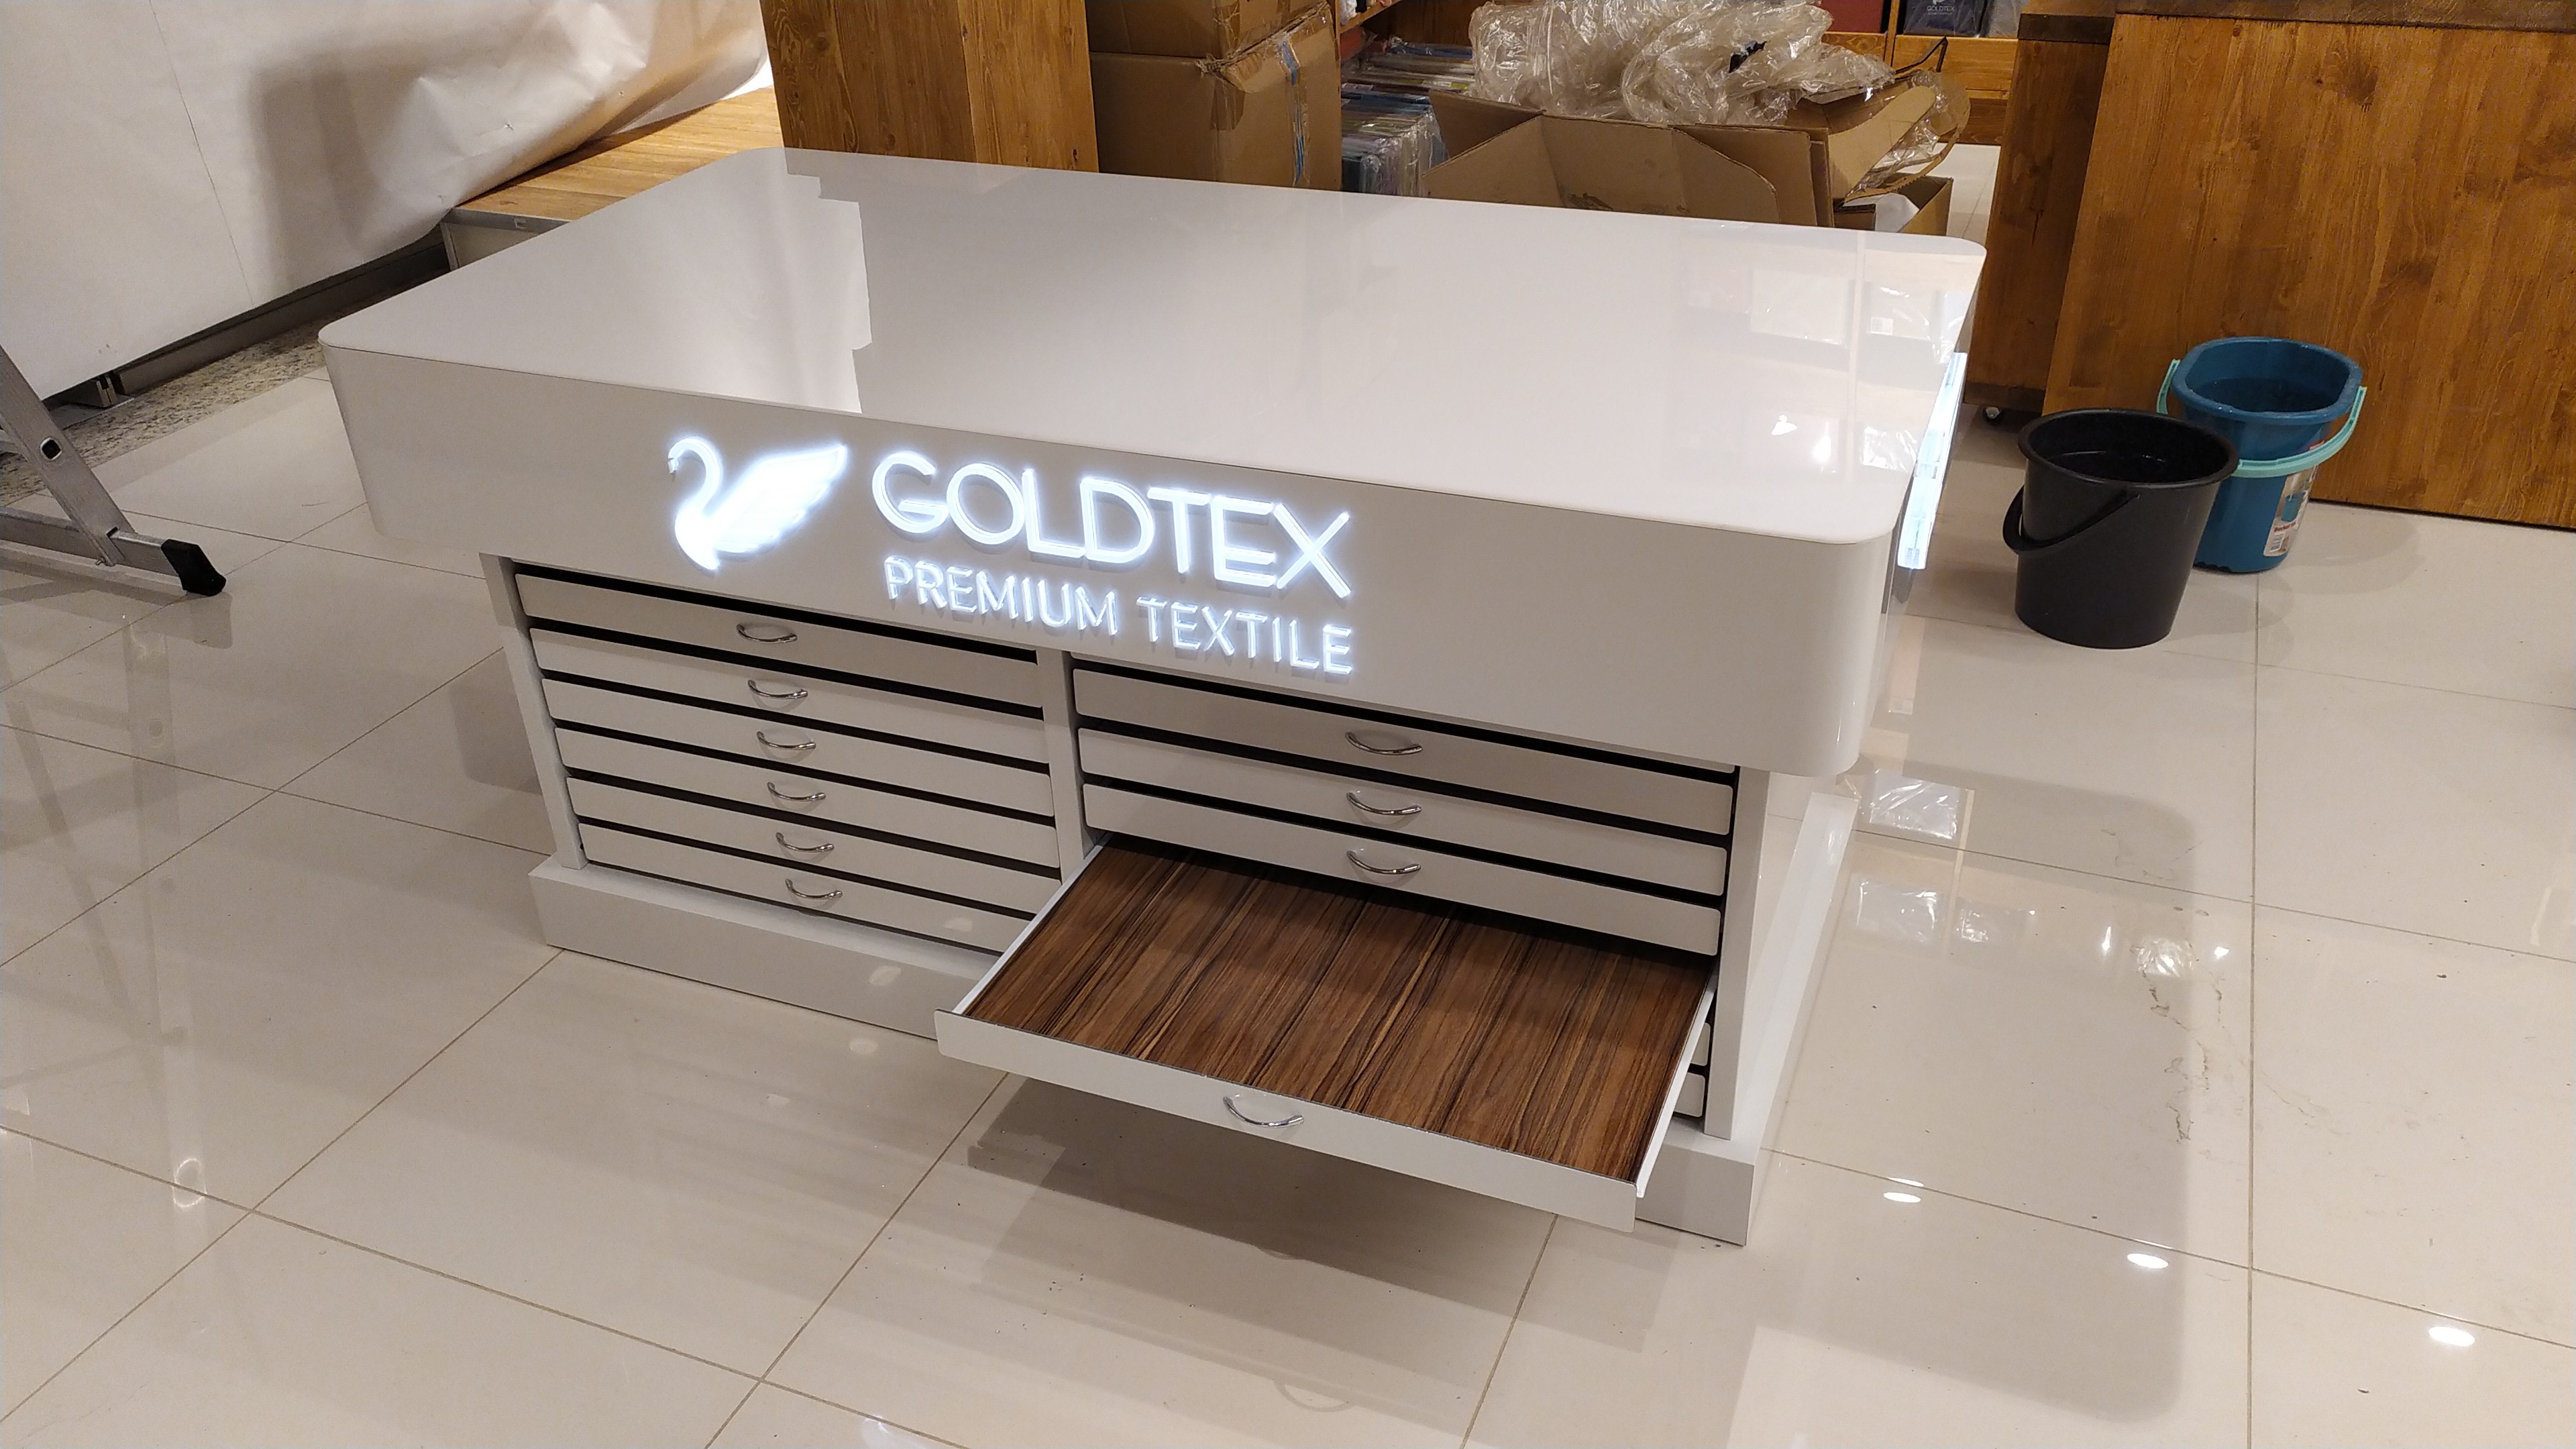 GOLDTEX premium textile